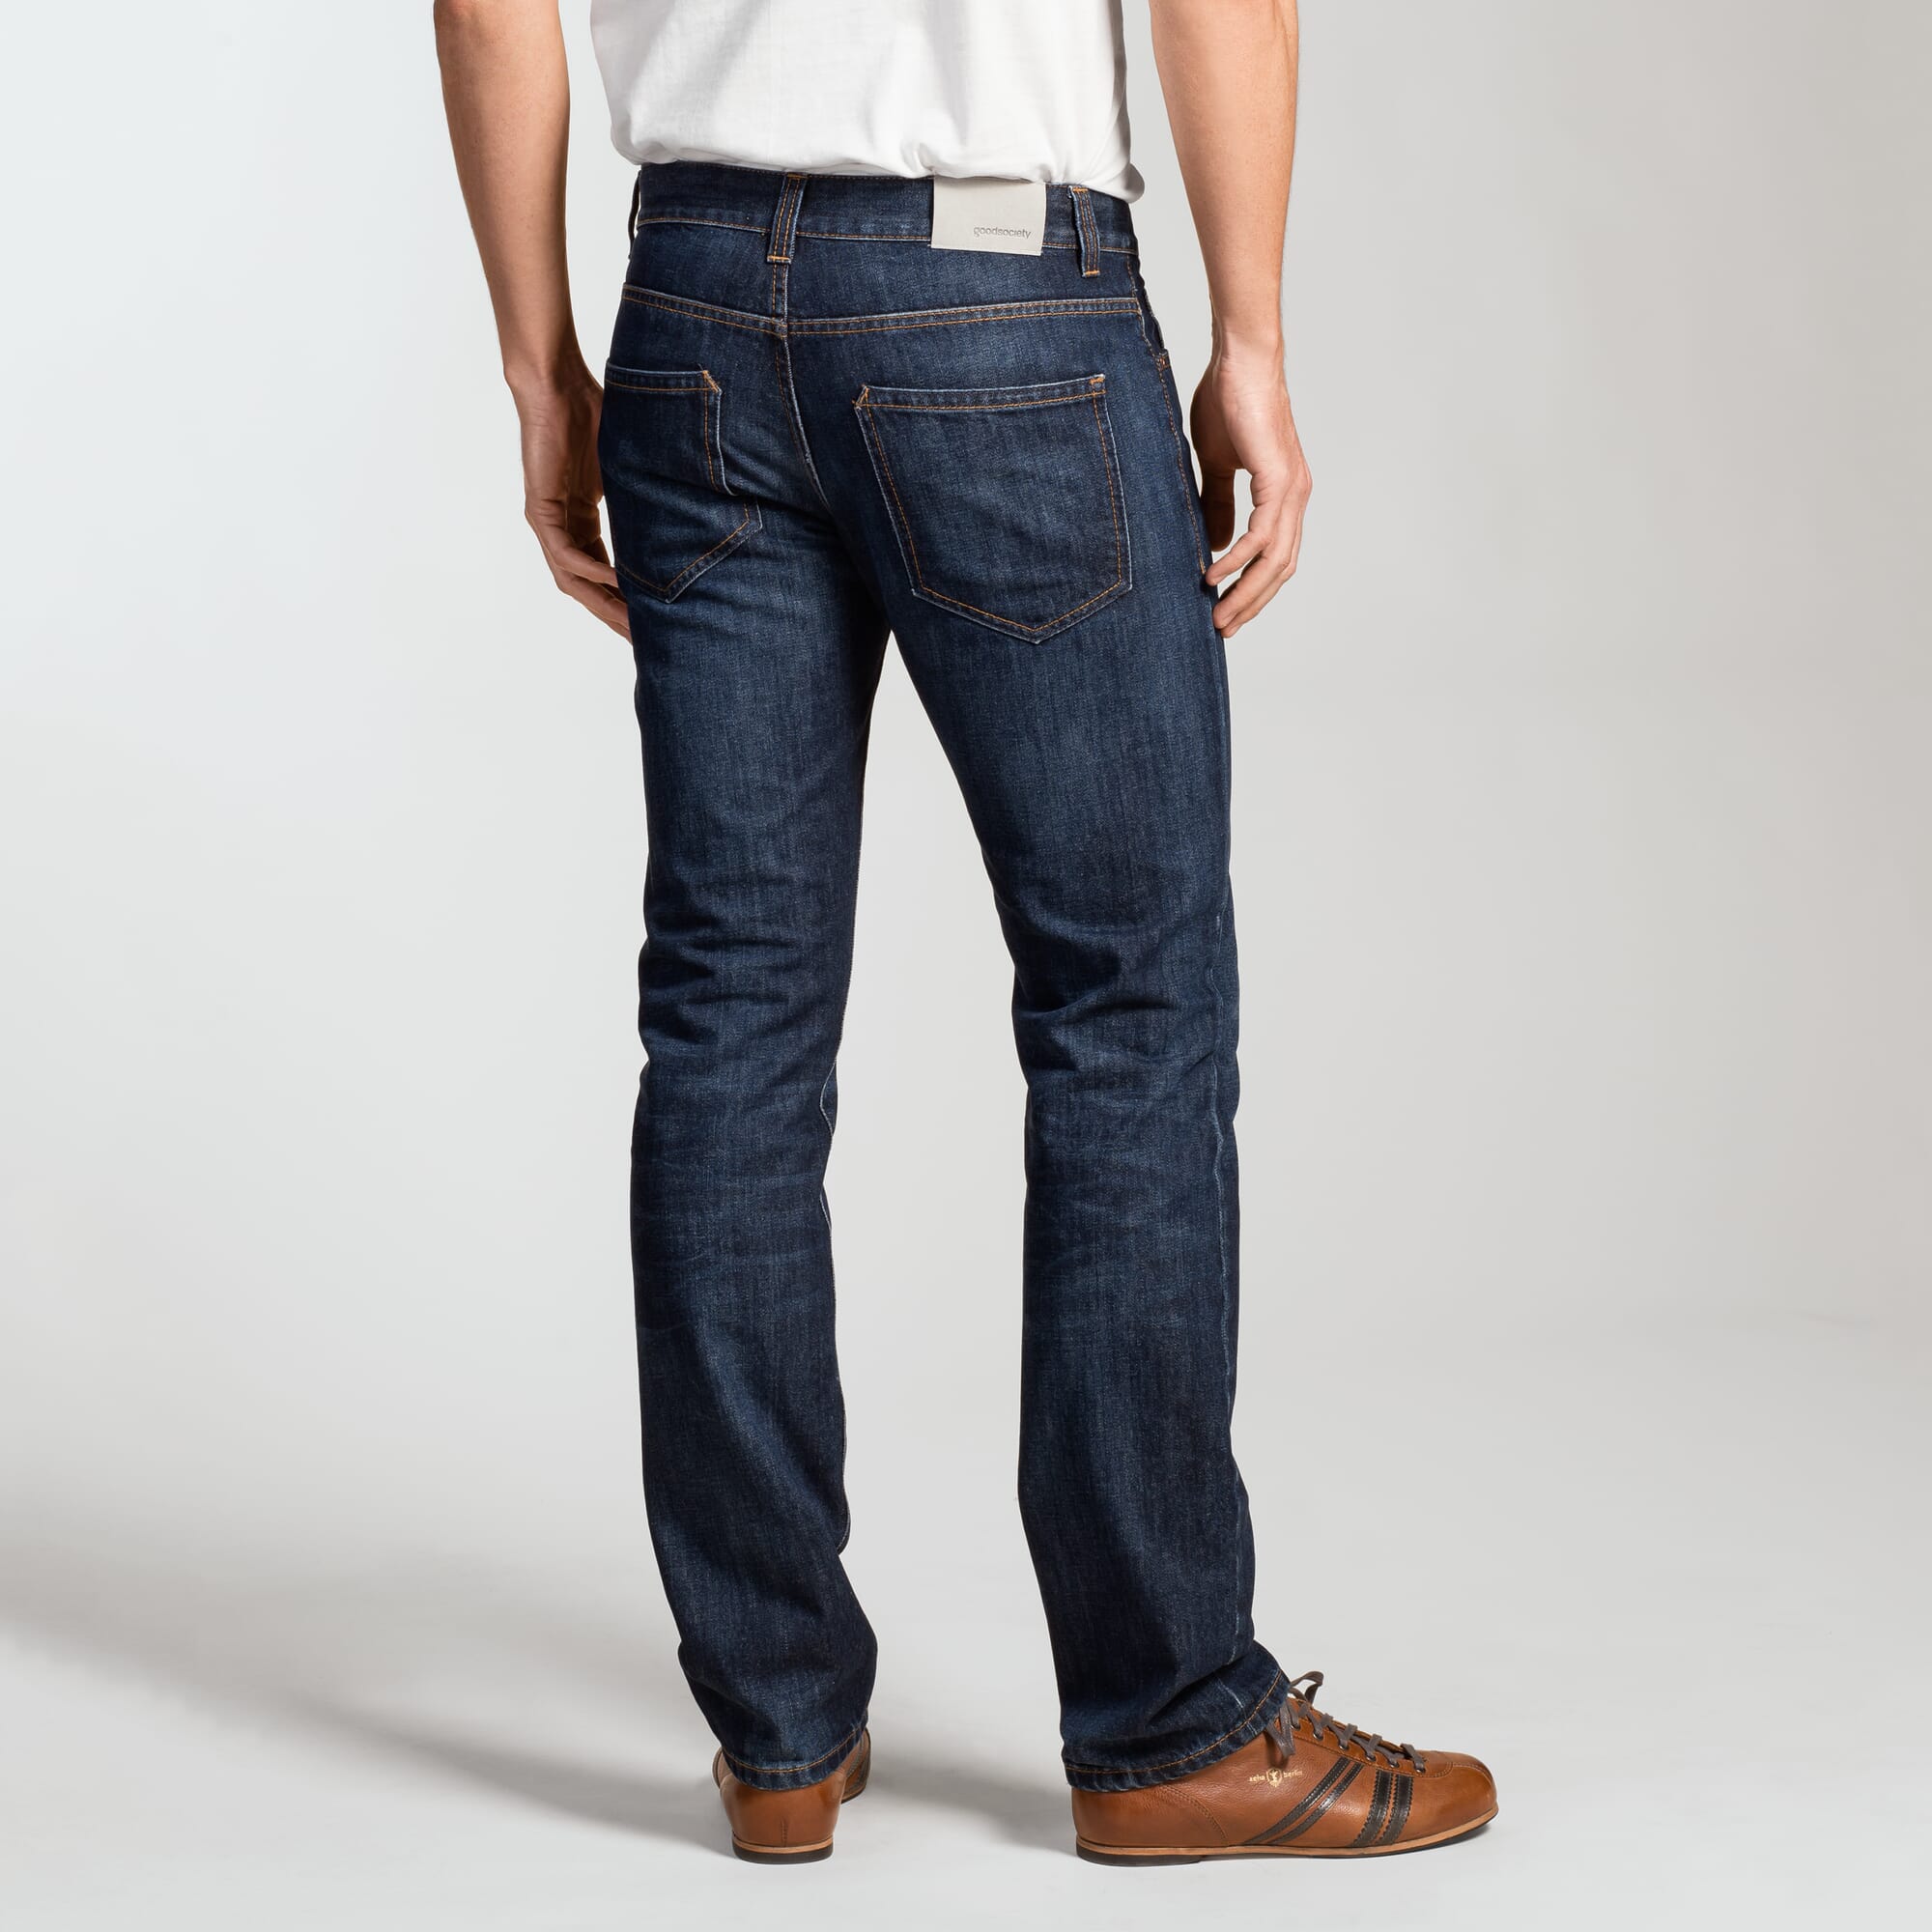 Harmony Denim Straight Jeans in het Blauw voor heren Heren Kleding voor voor Jeans voor Jeans met rechte pijp 